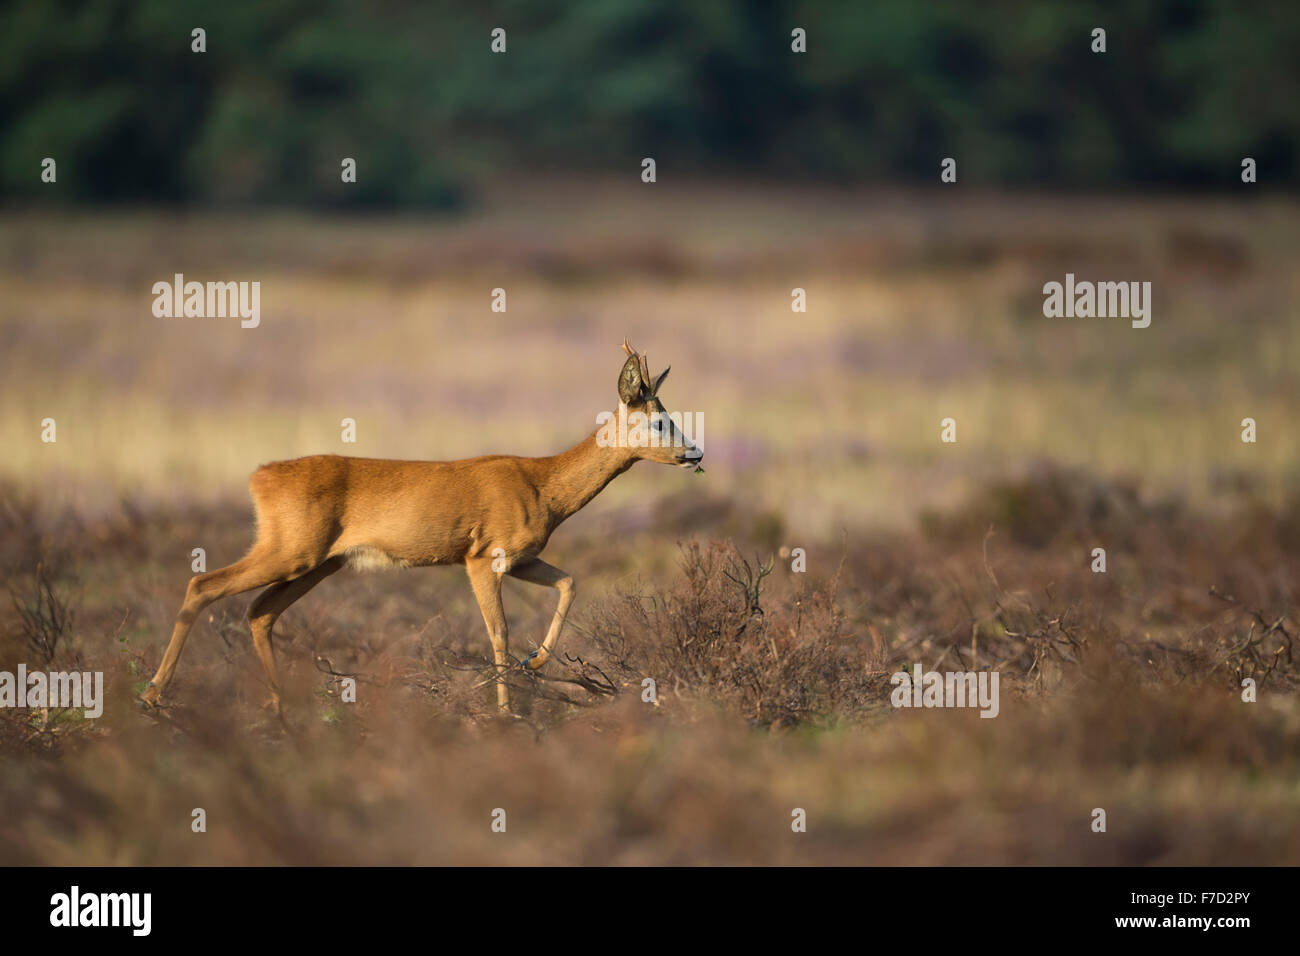 Roe deer / Buck / Reh ( Capreolus capreolus ) marche calmement sur ouvrir les prairies sèches, aux herbes dans sa bouche. Banque D'Images